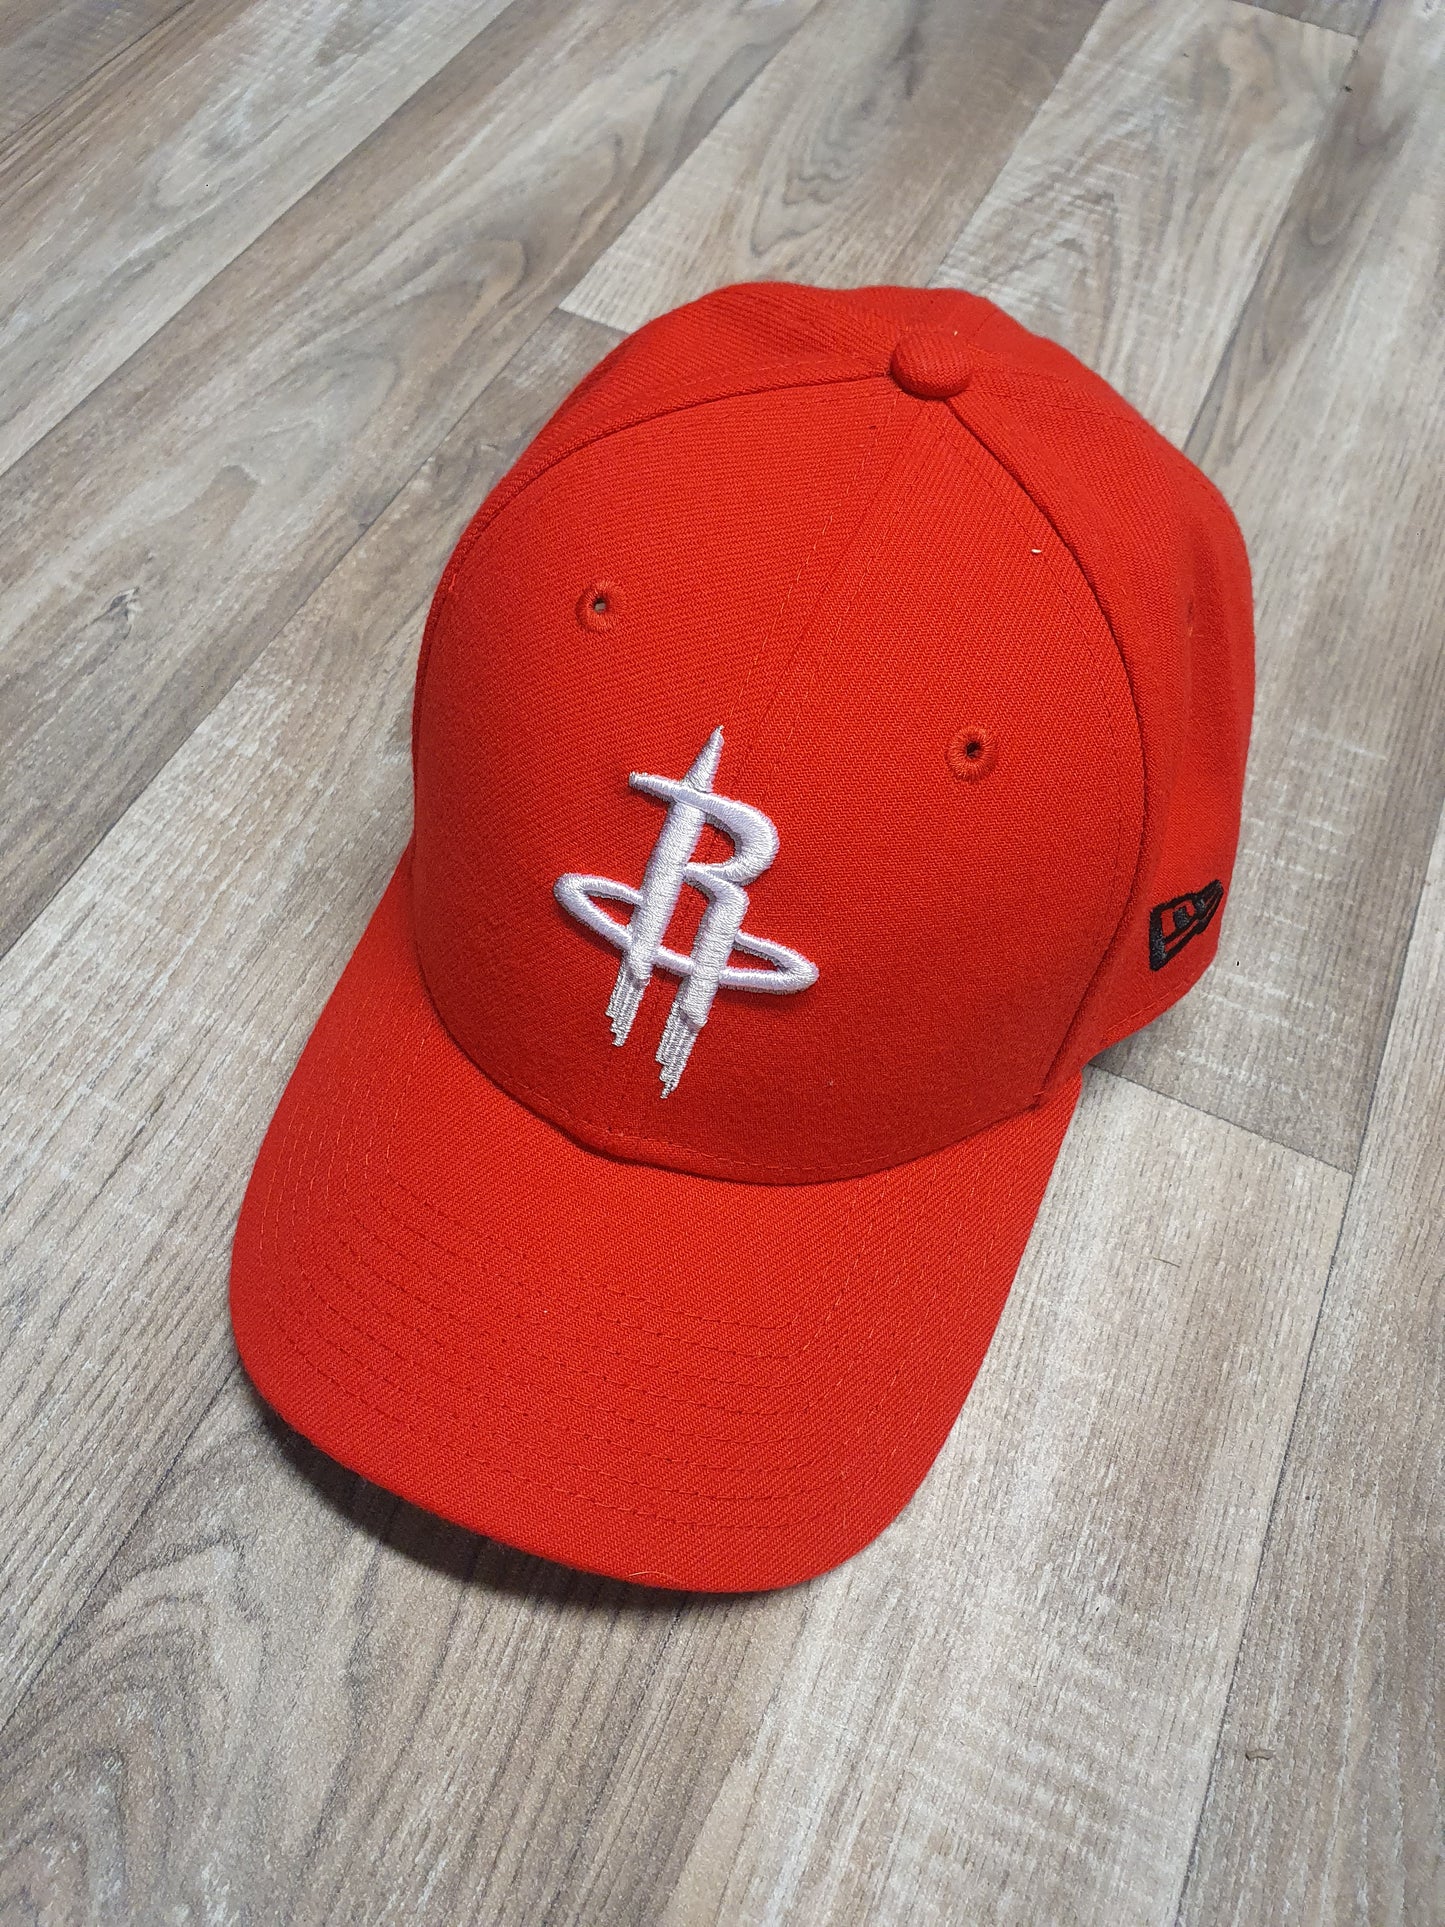 Houston Rockets Strapback Hat